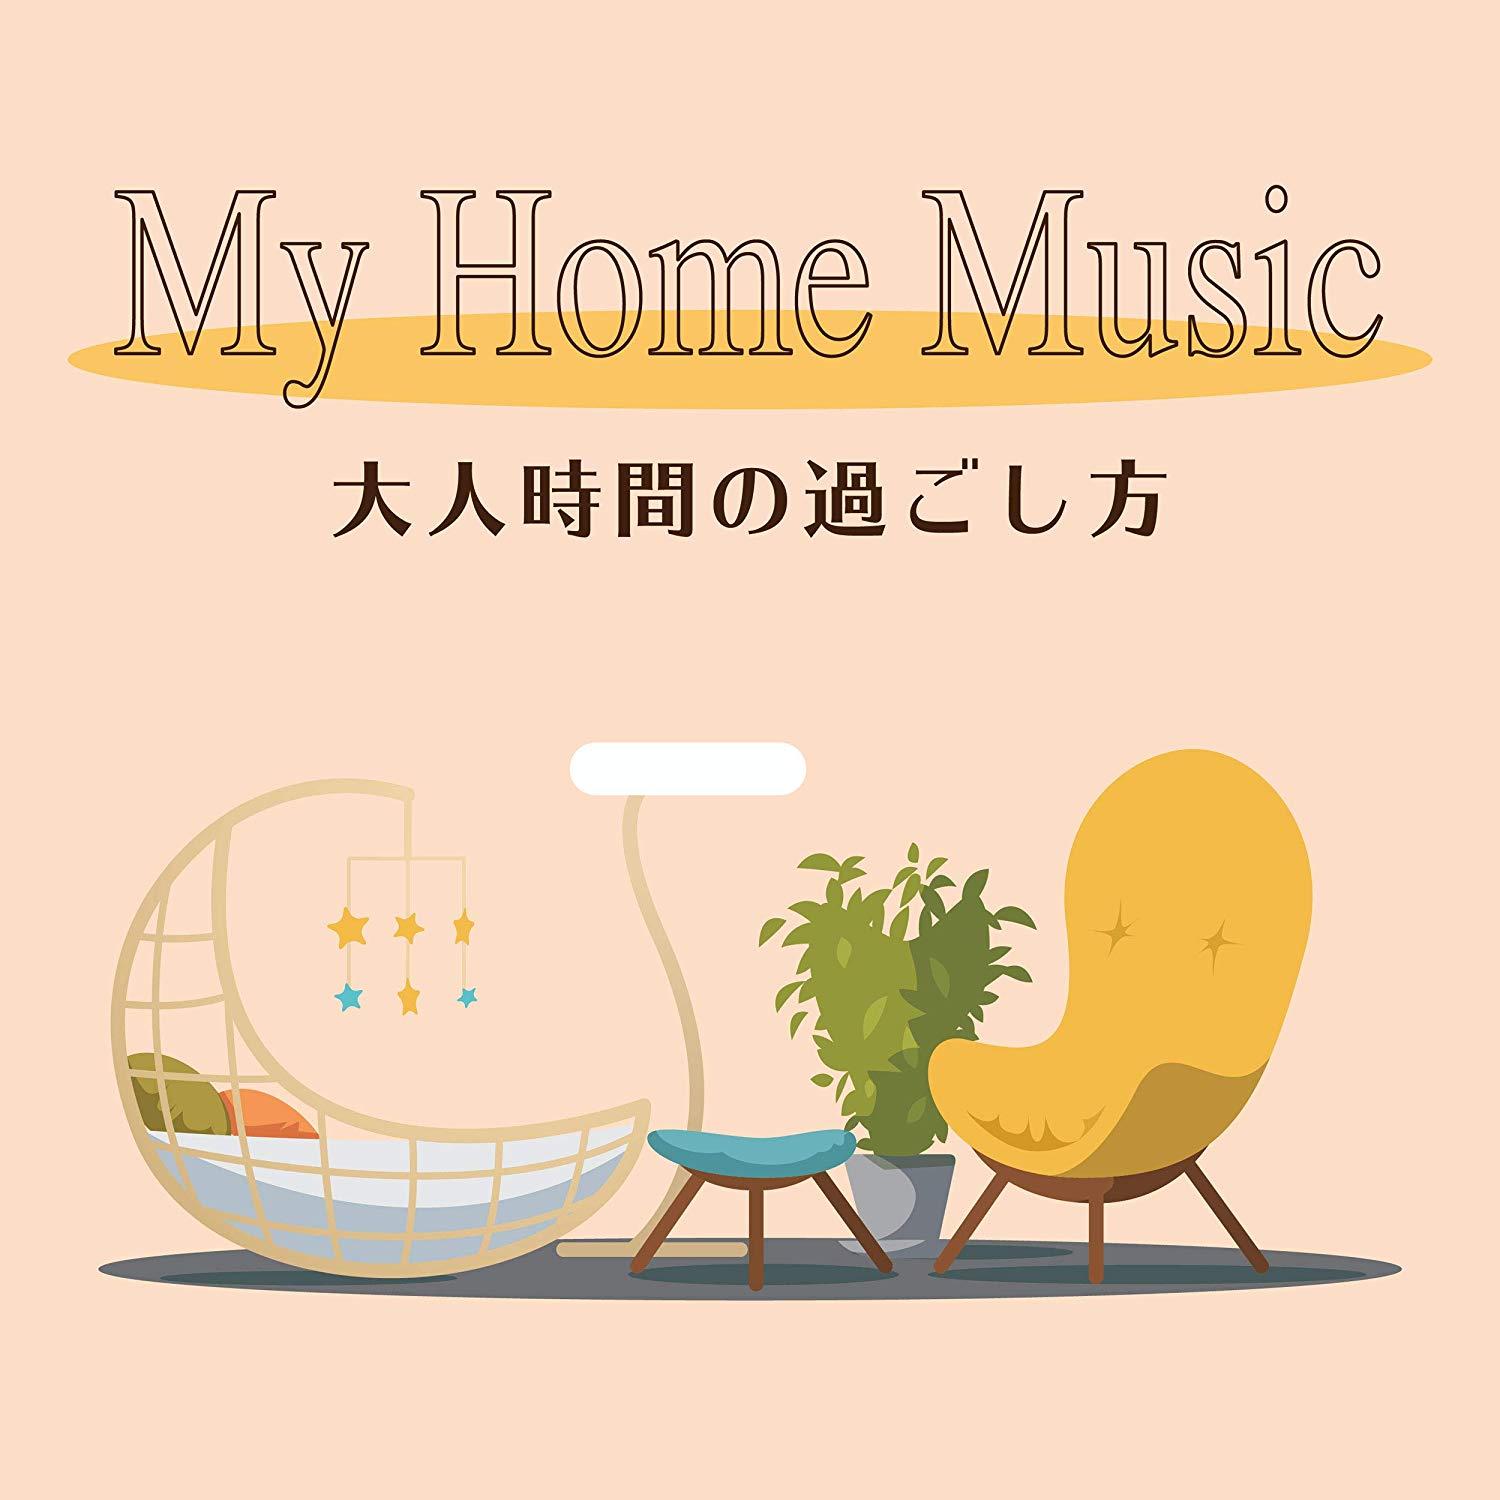 My Home Music lԂ̉߂ Kaoru Sakuma